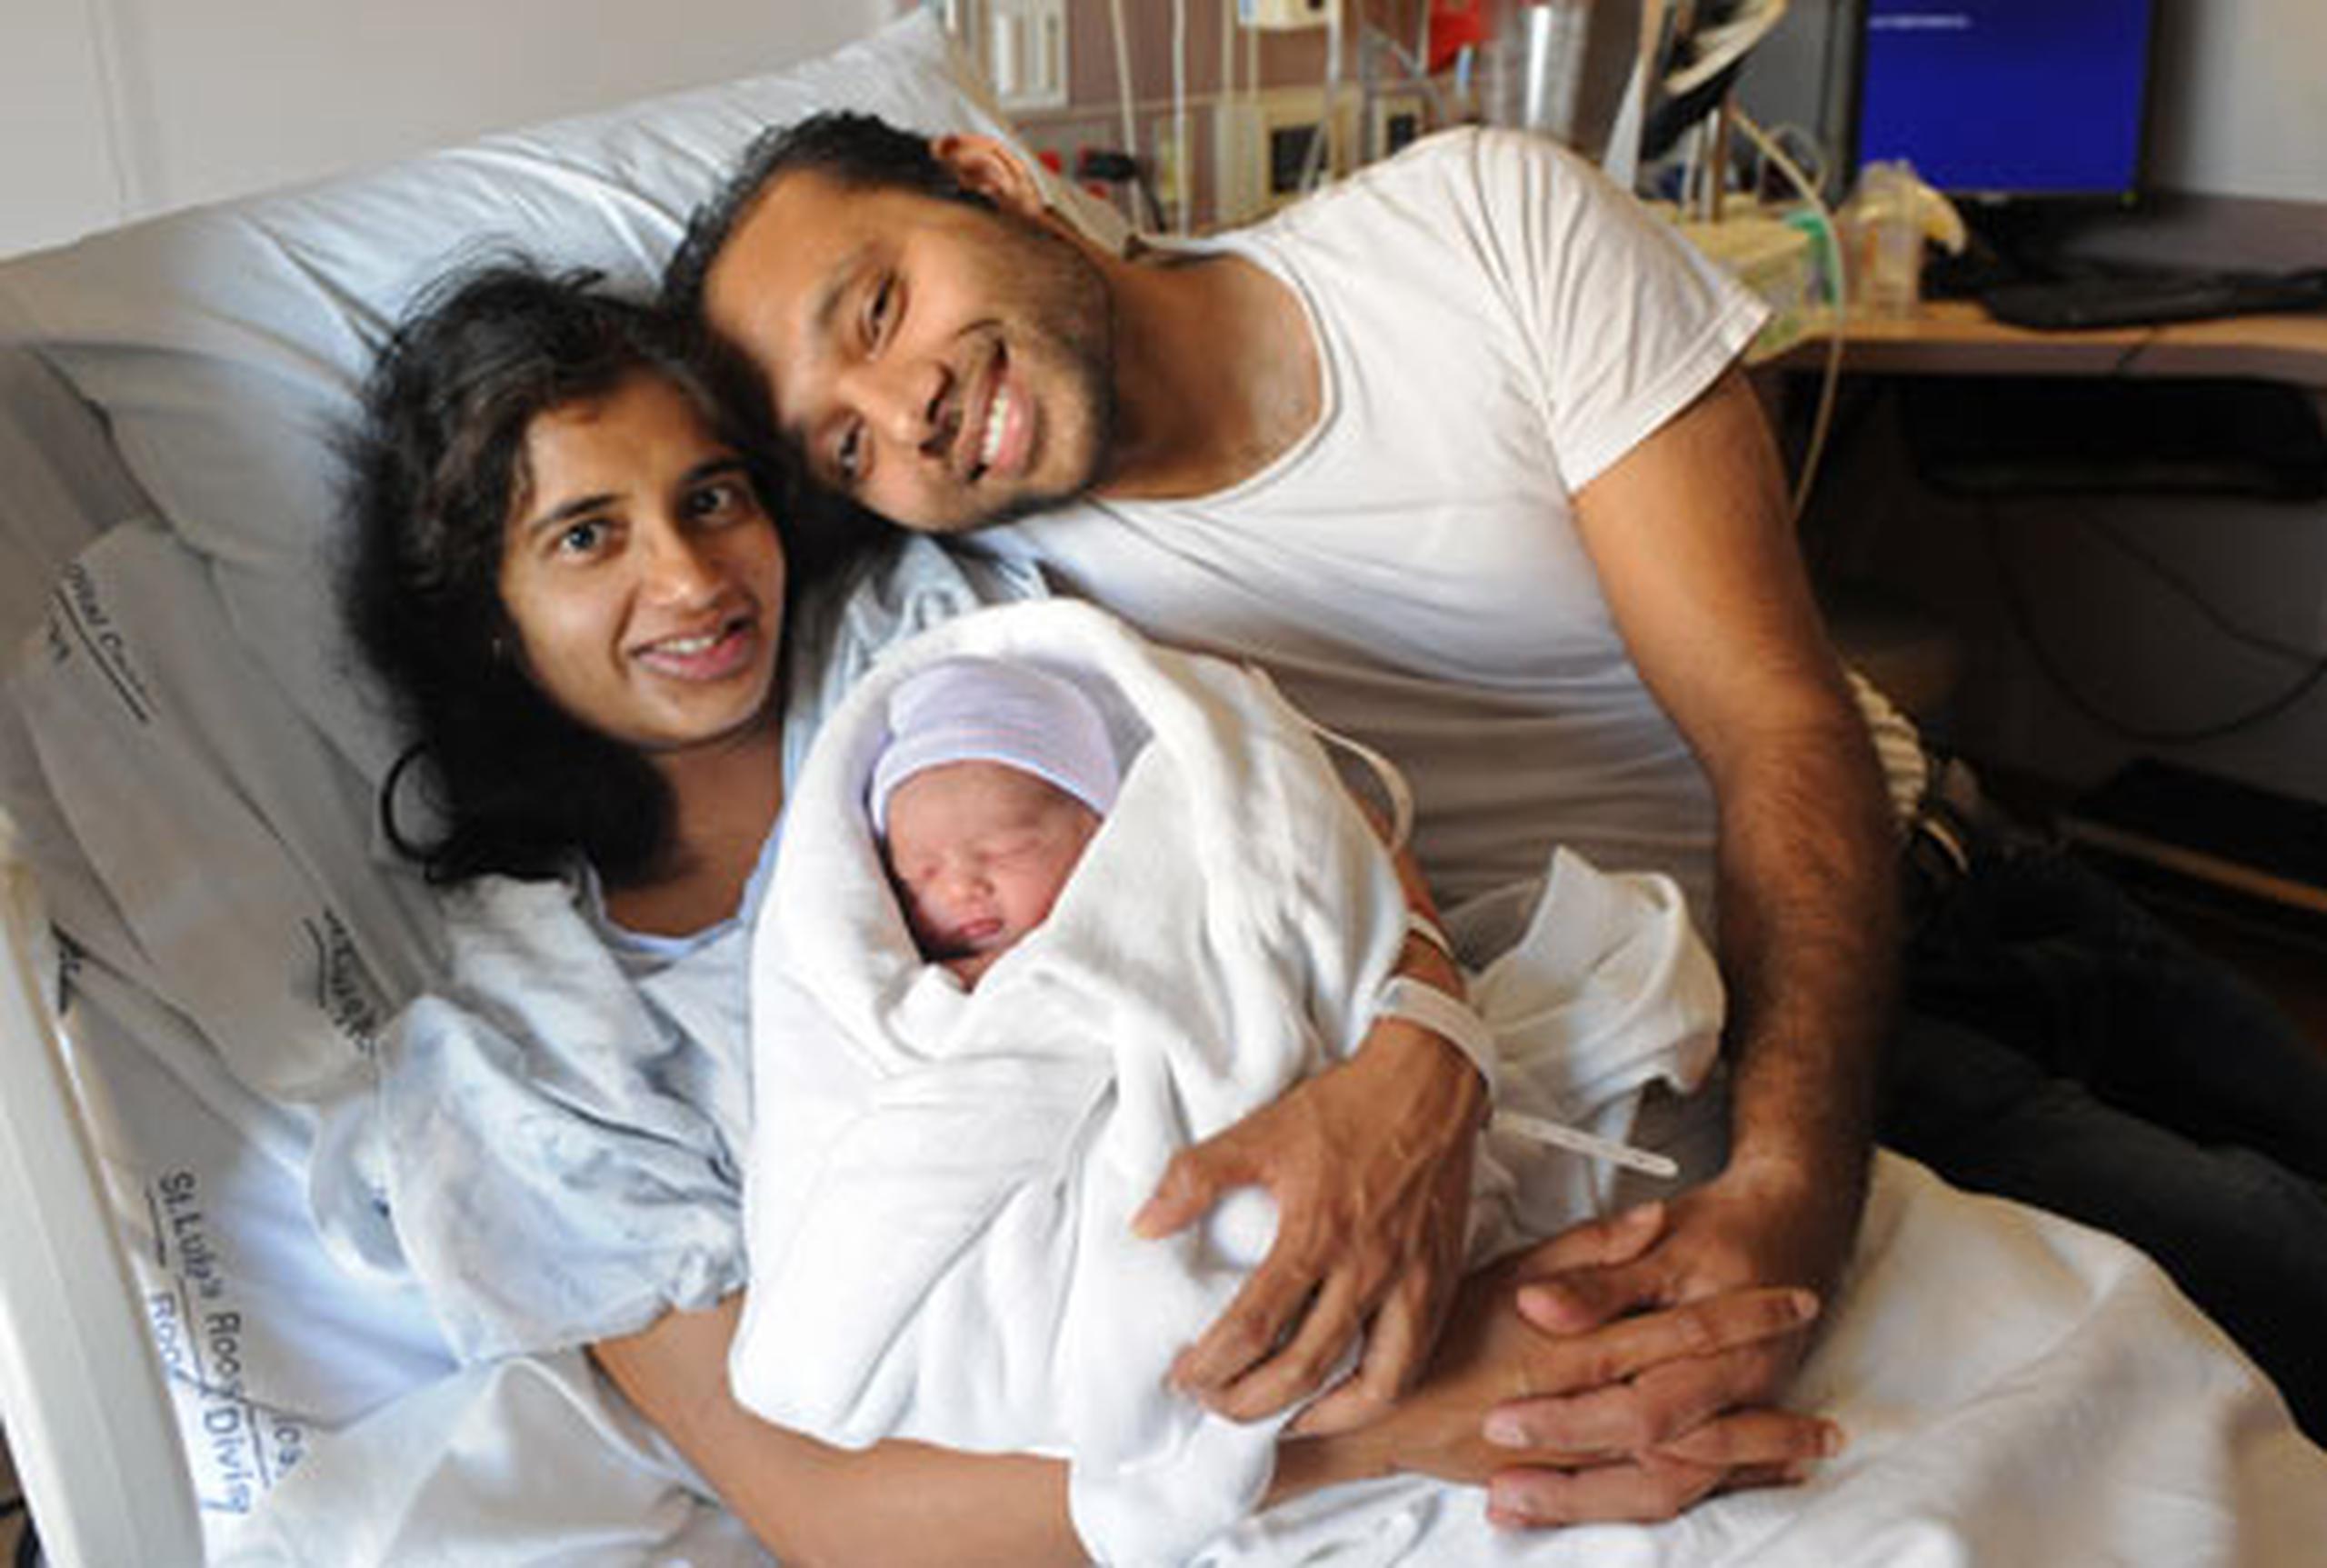 El recién nacido es prematuro pero se recupera favorablemente en el hospital y sus padres, que no han querido hacer público su nombre, ya tienen un apodo para el niño: "Jhatpat", la palabra hindi para "rápido". (EFE)